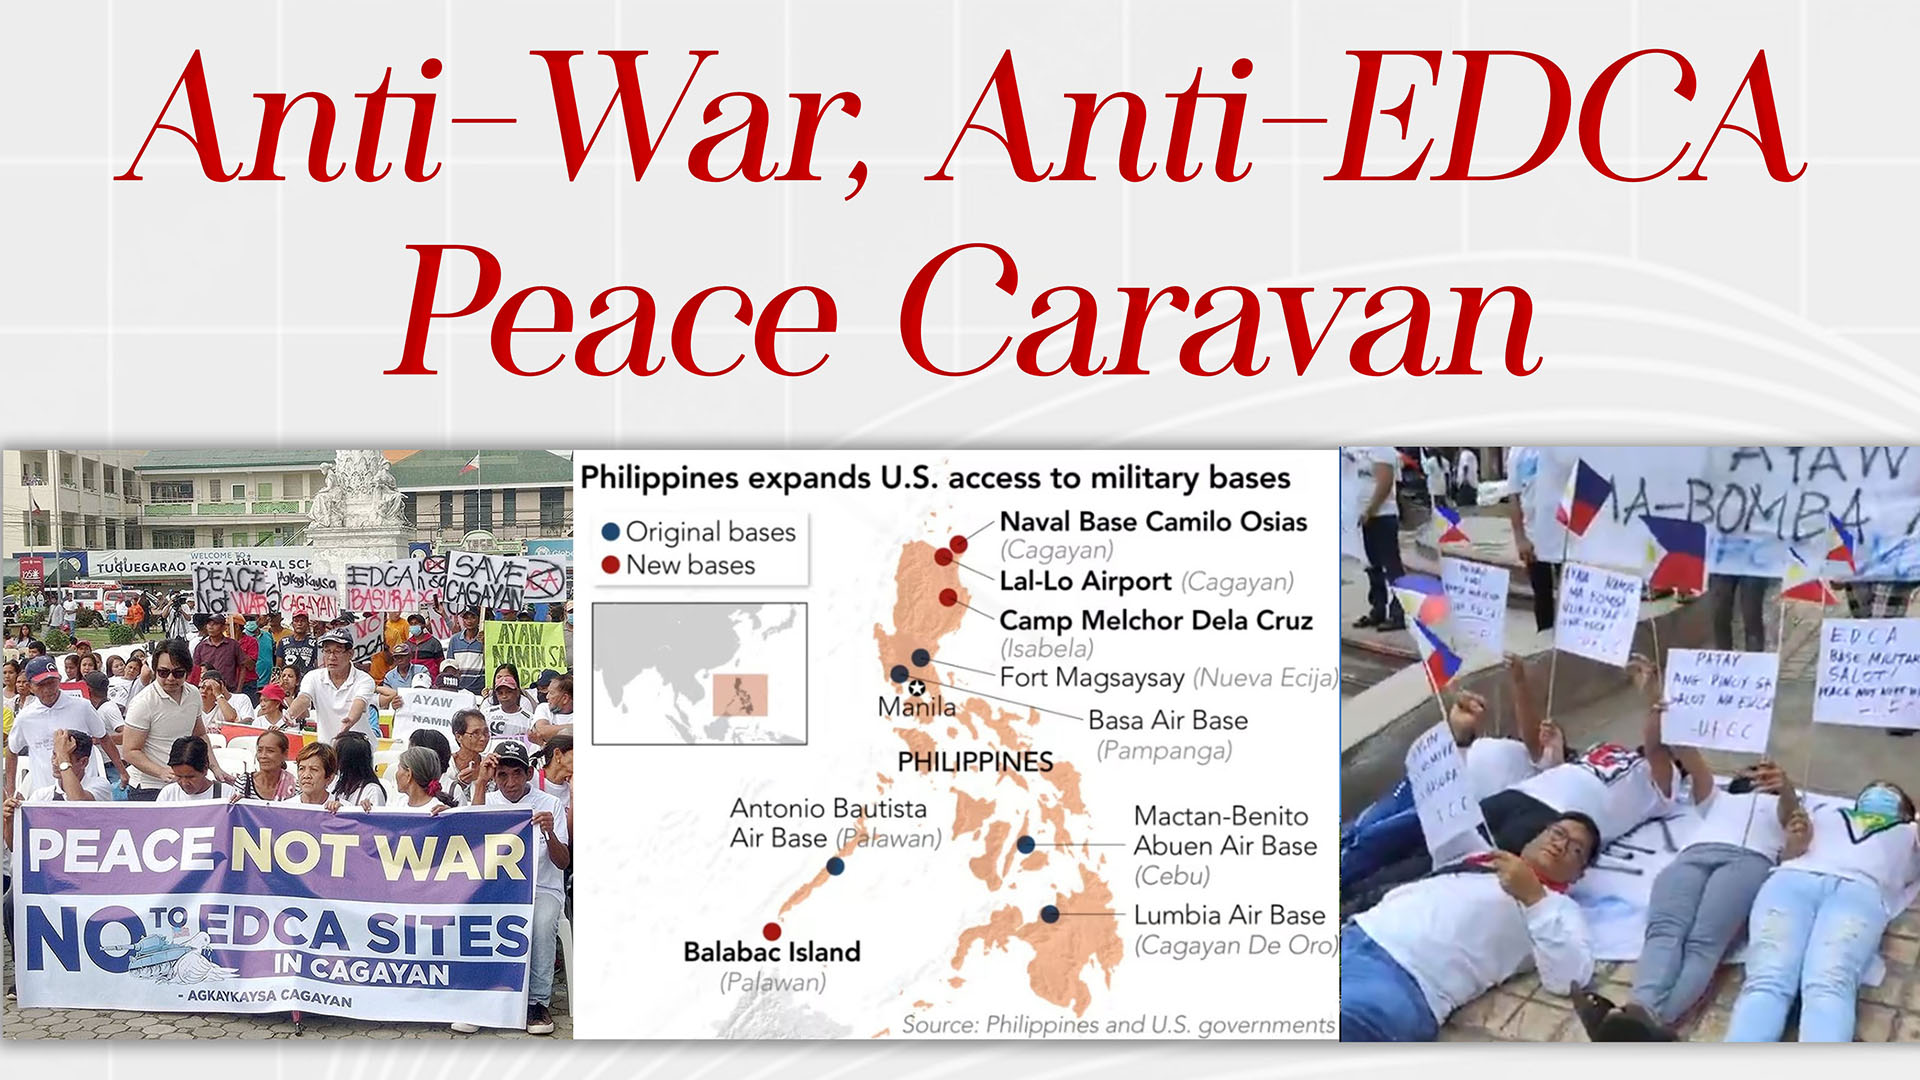 Anti-War, Anti-EDCA Peace Caravan Forum